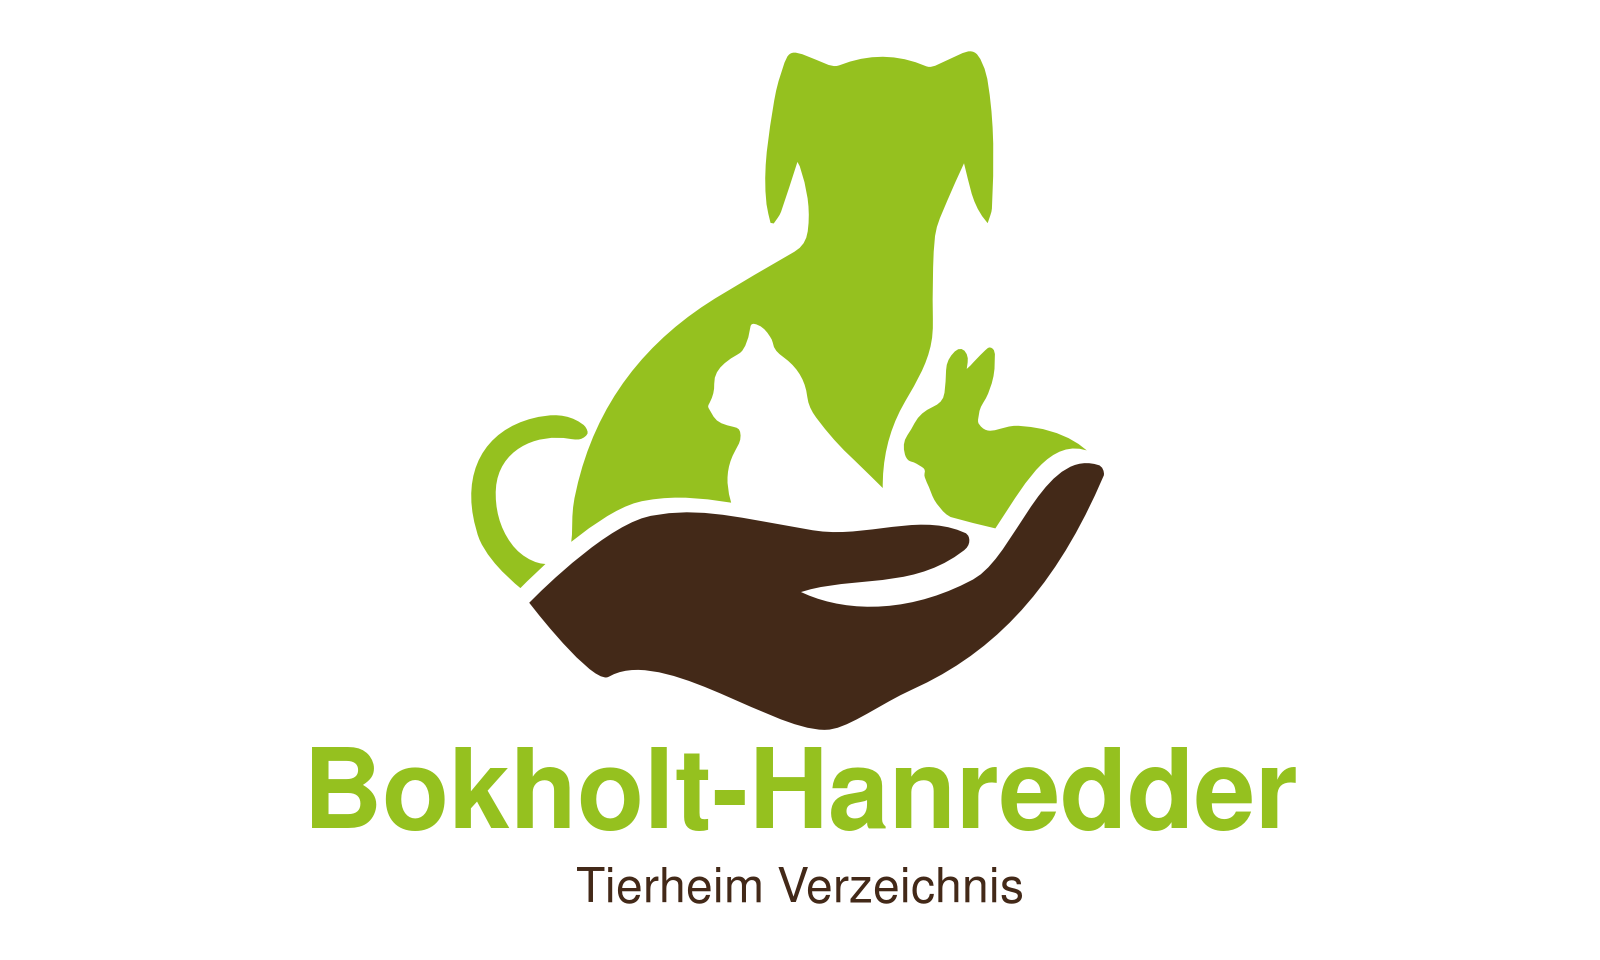 Tierheim Bokholt-Hanredder